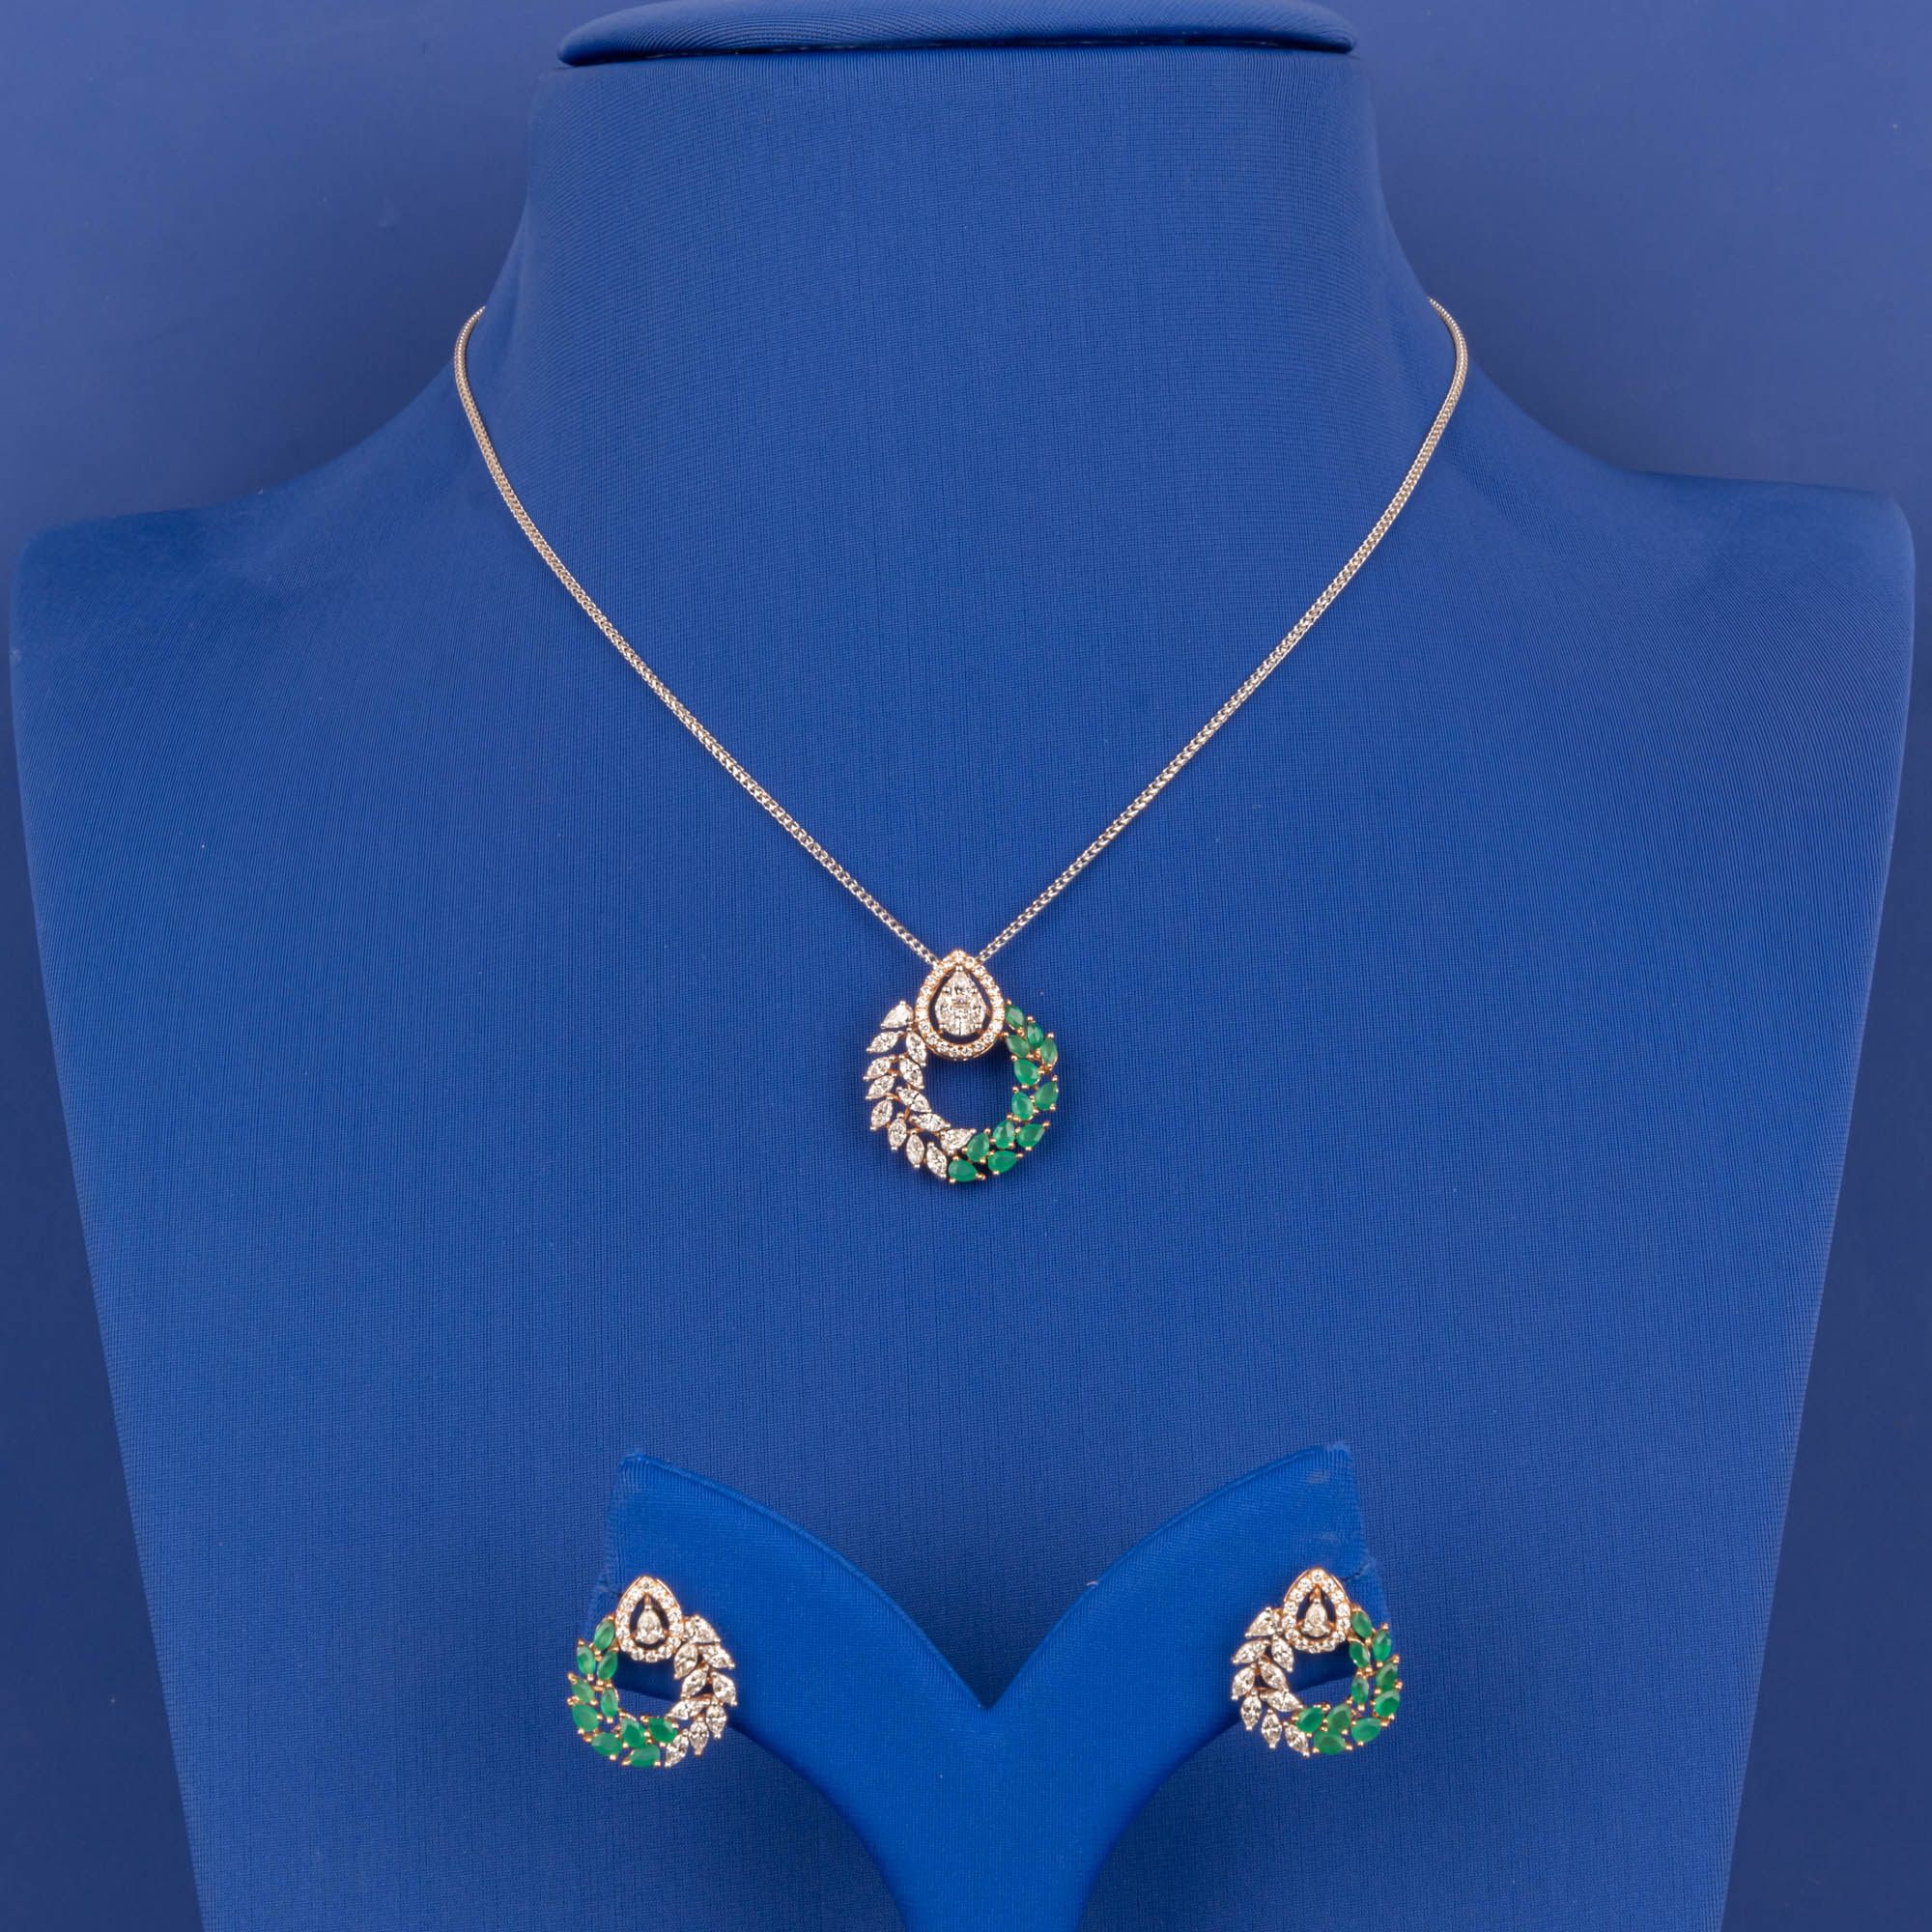 Royal Splendor: 18K RG Diamond Pendant and Earring Set (Chain not included)